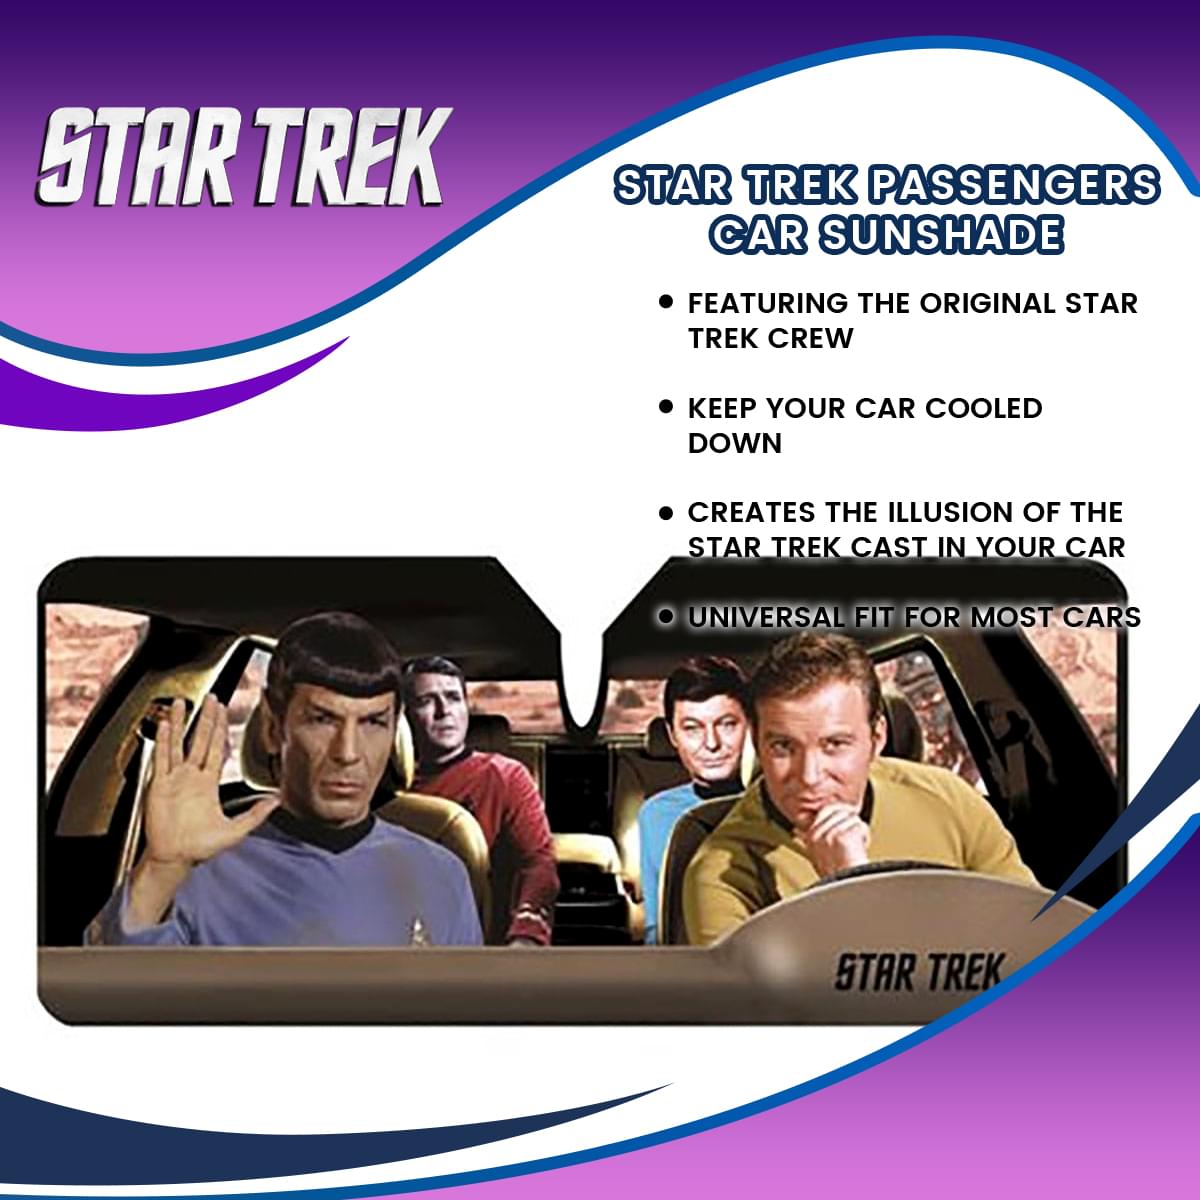 Star Trek Passengers Car Sunshade